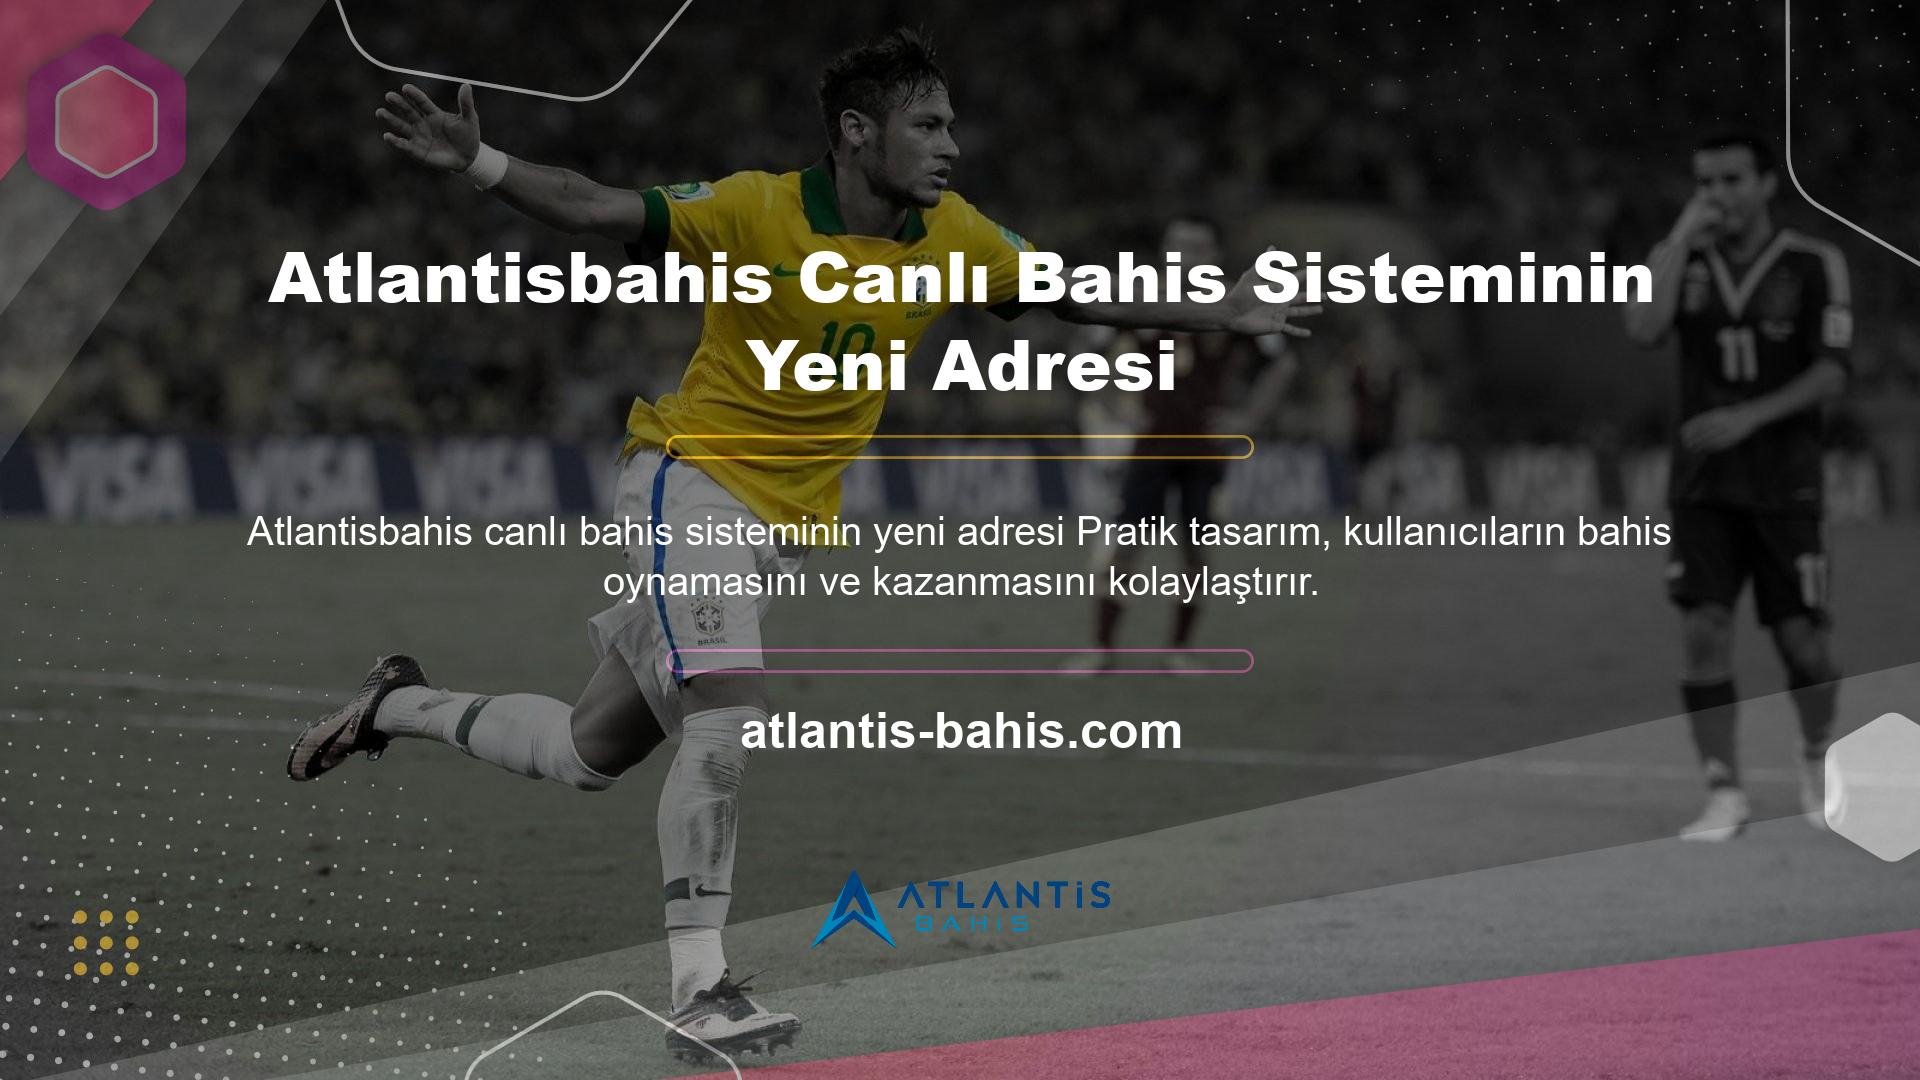 Atlantisbahis canlı bahis sistemi, kullanıcılarına harika bahis bonusları sunan modern bir bahis sitesi ve platformudur